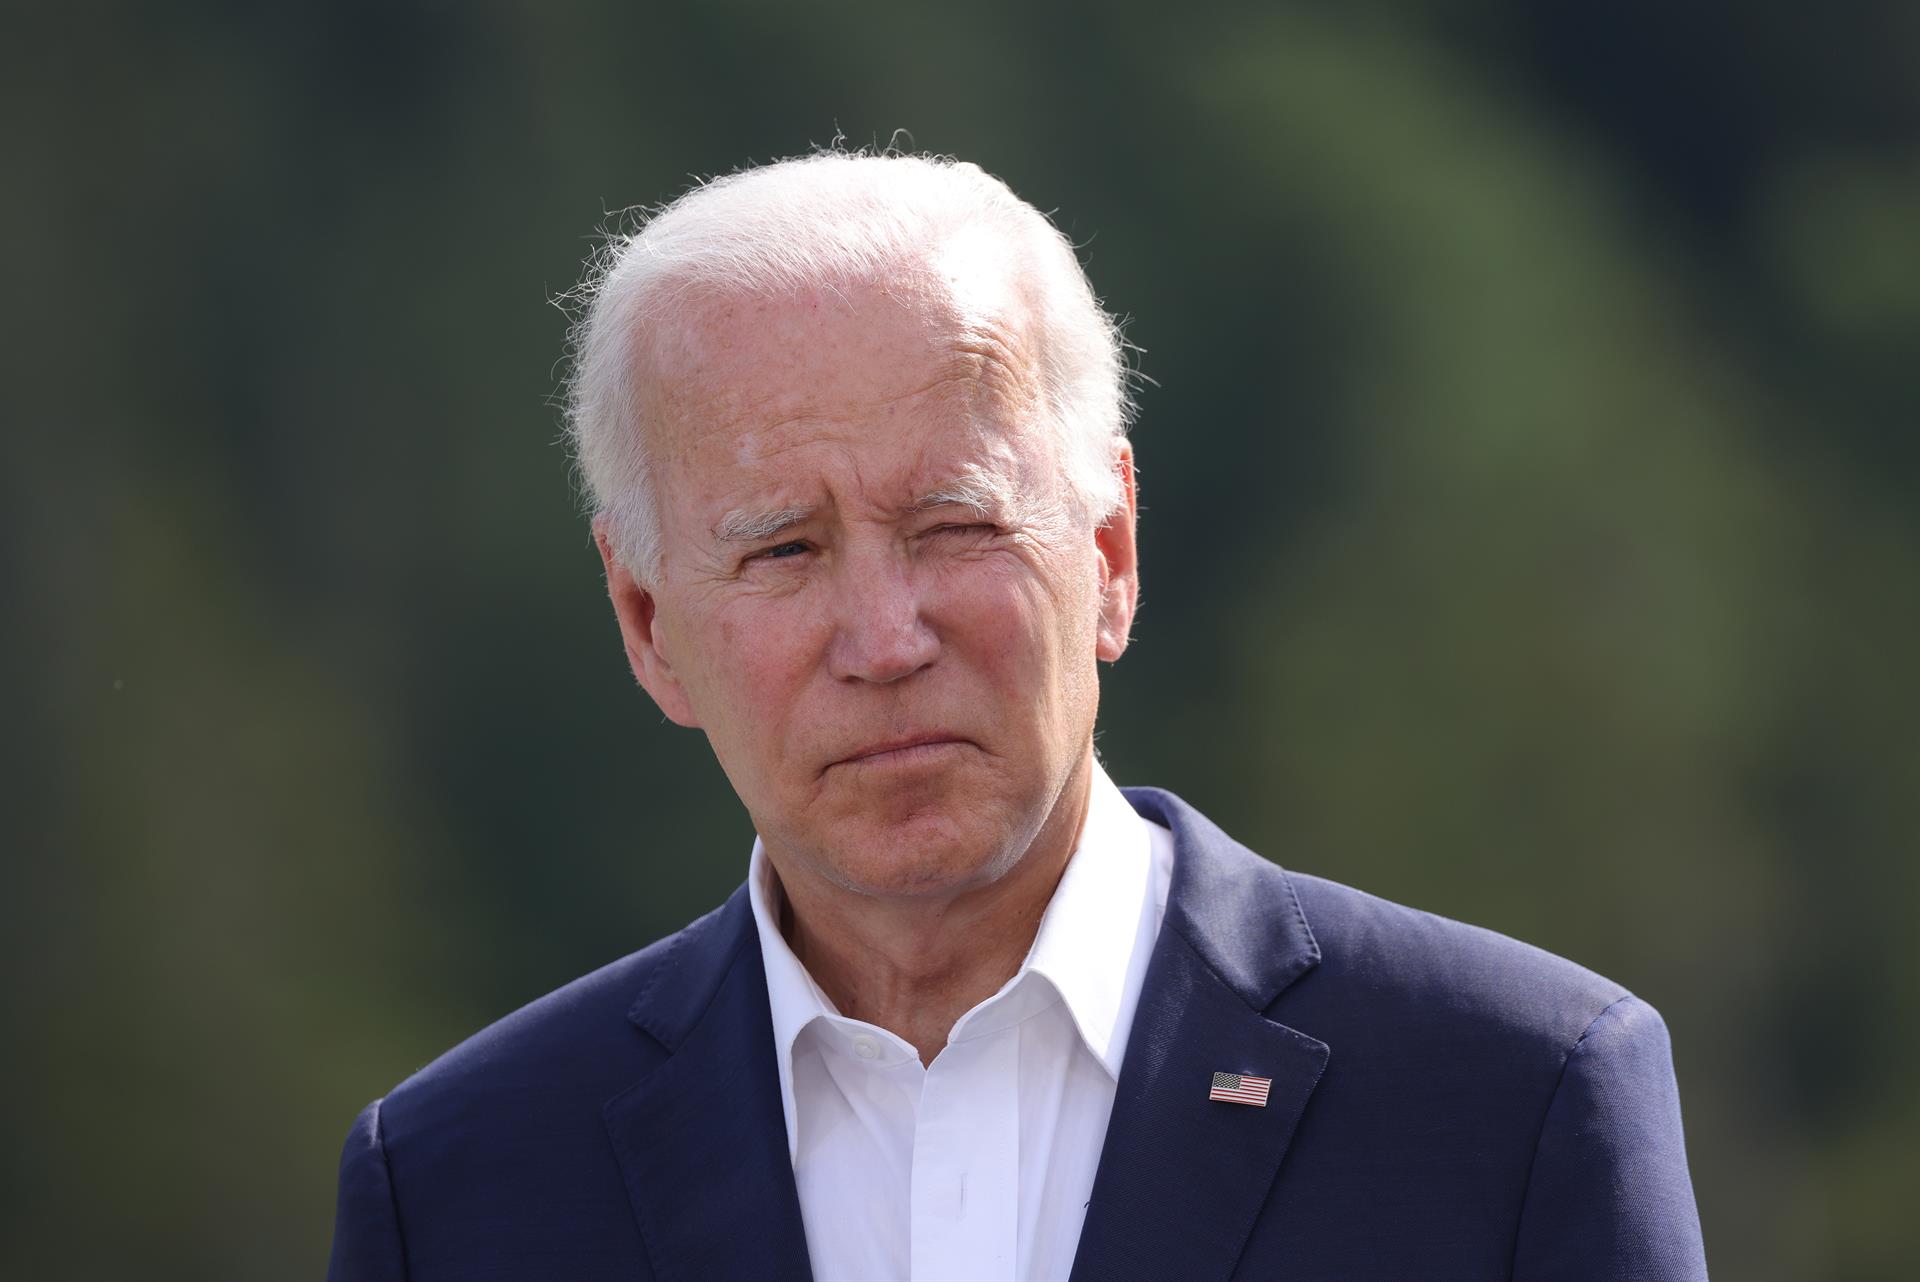 Biden, evasivo sobre posible postulación a reelección: “Eso está por verse”